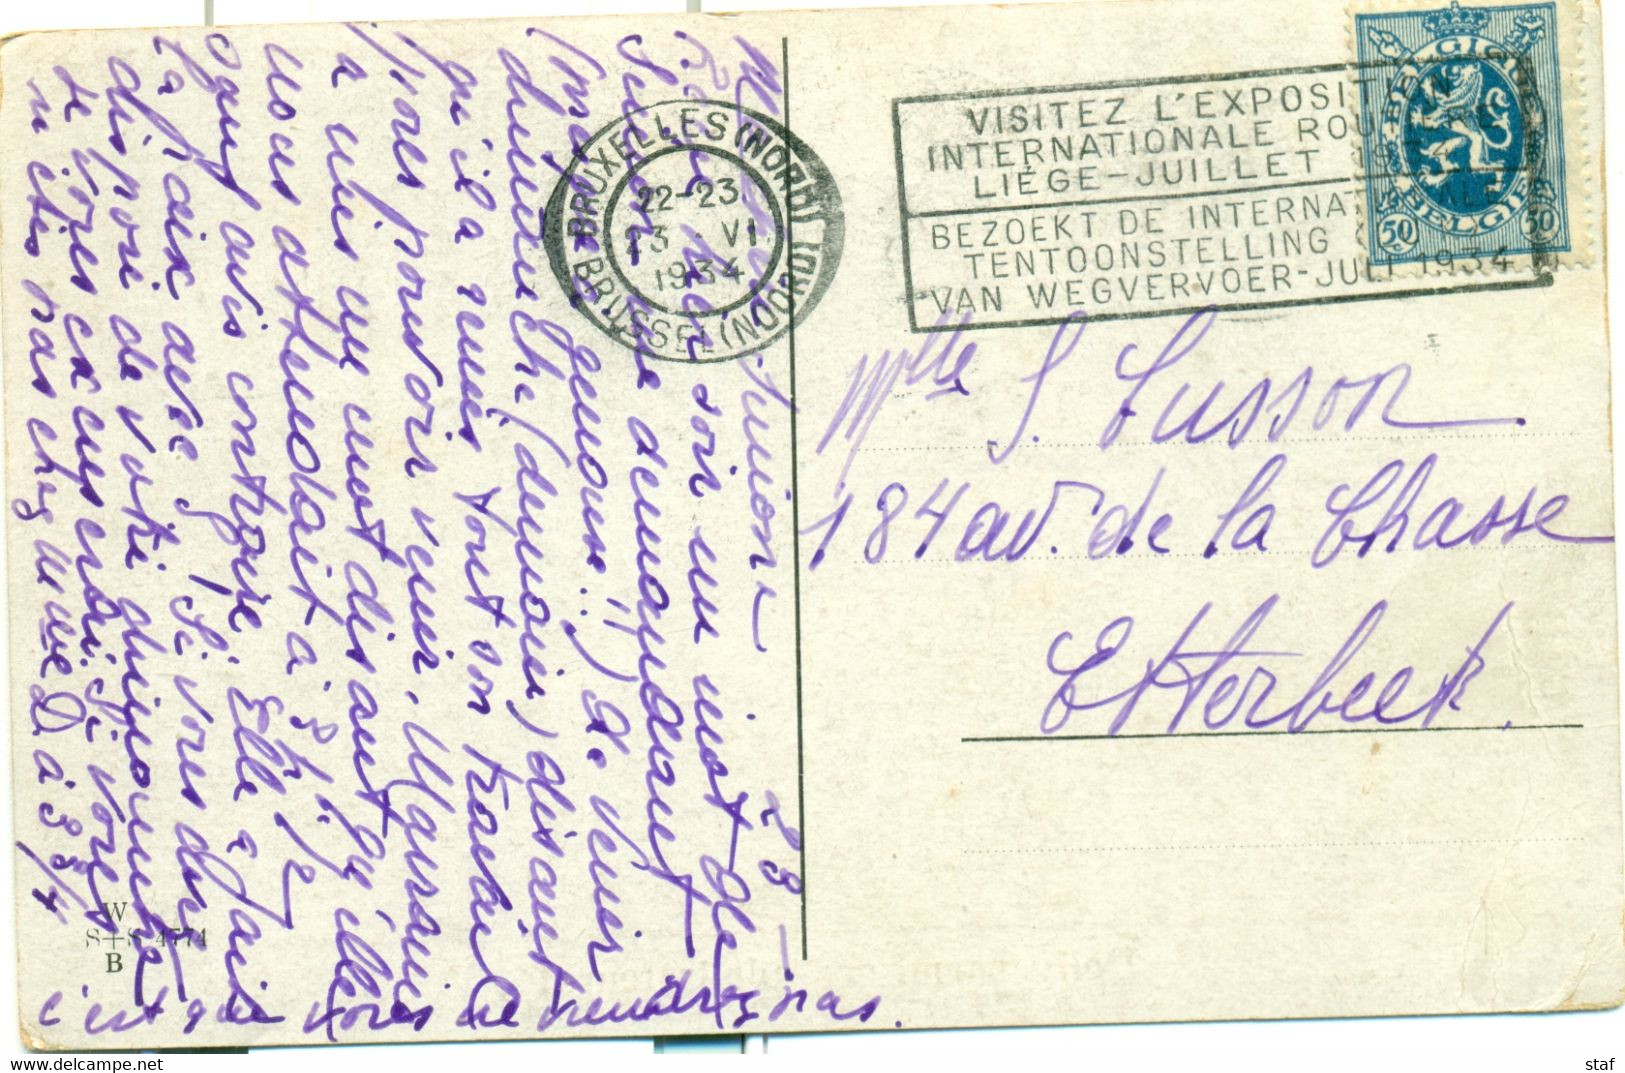 Visitez L'Exposition Internationale Routière Liège Juillet 1934 - Targhette